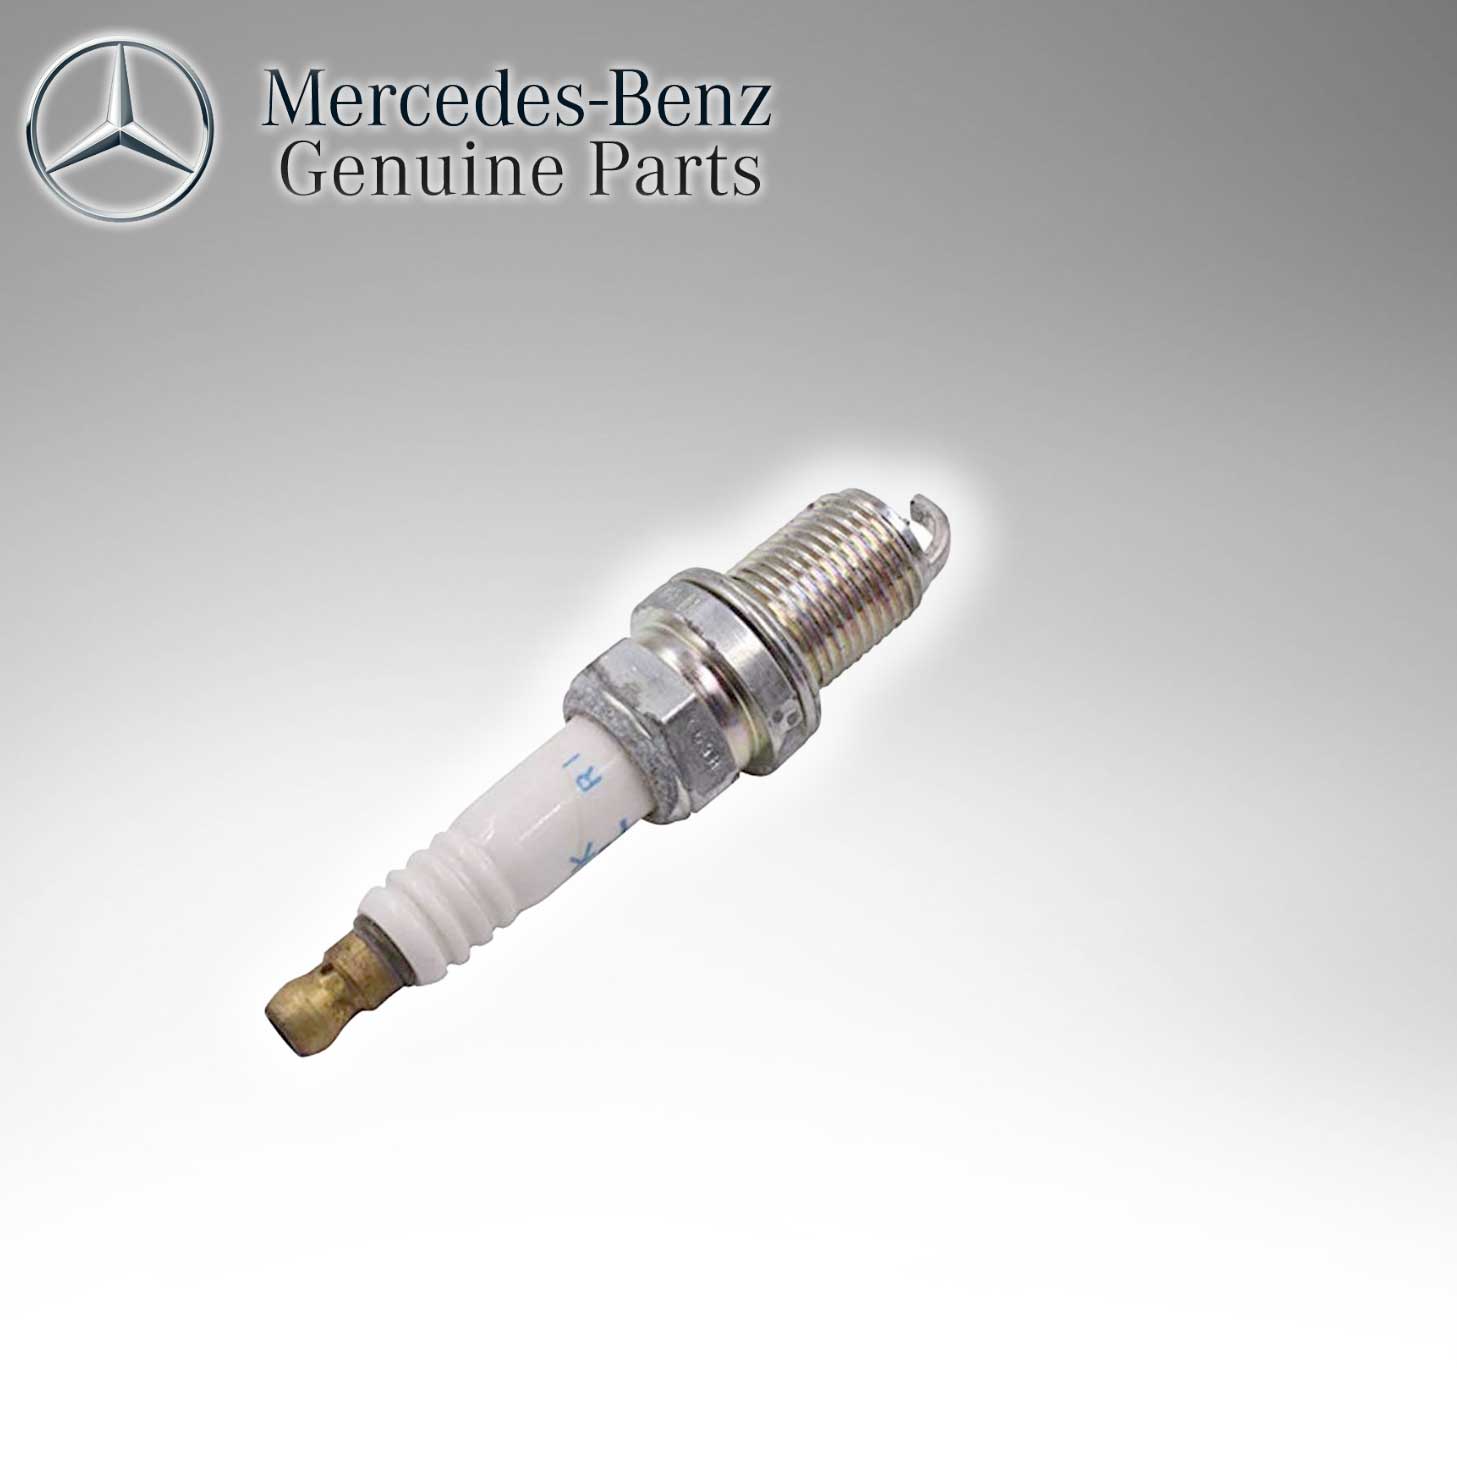 Mercedes Benz Genuine Spark Plug 0041593003